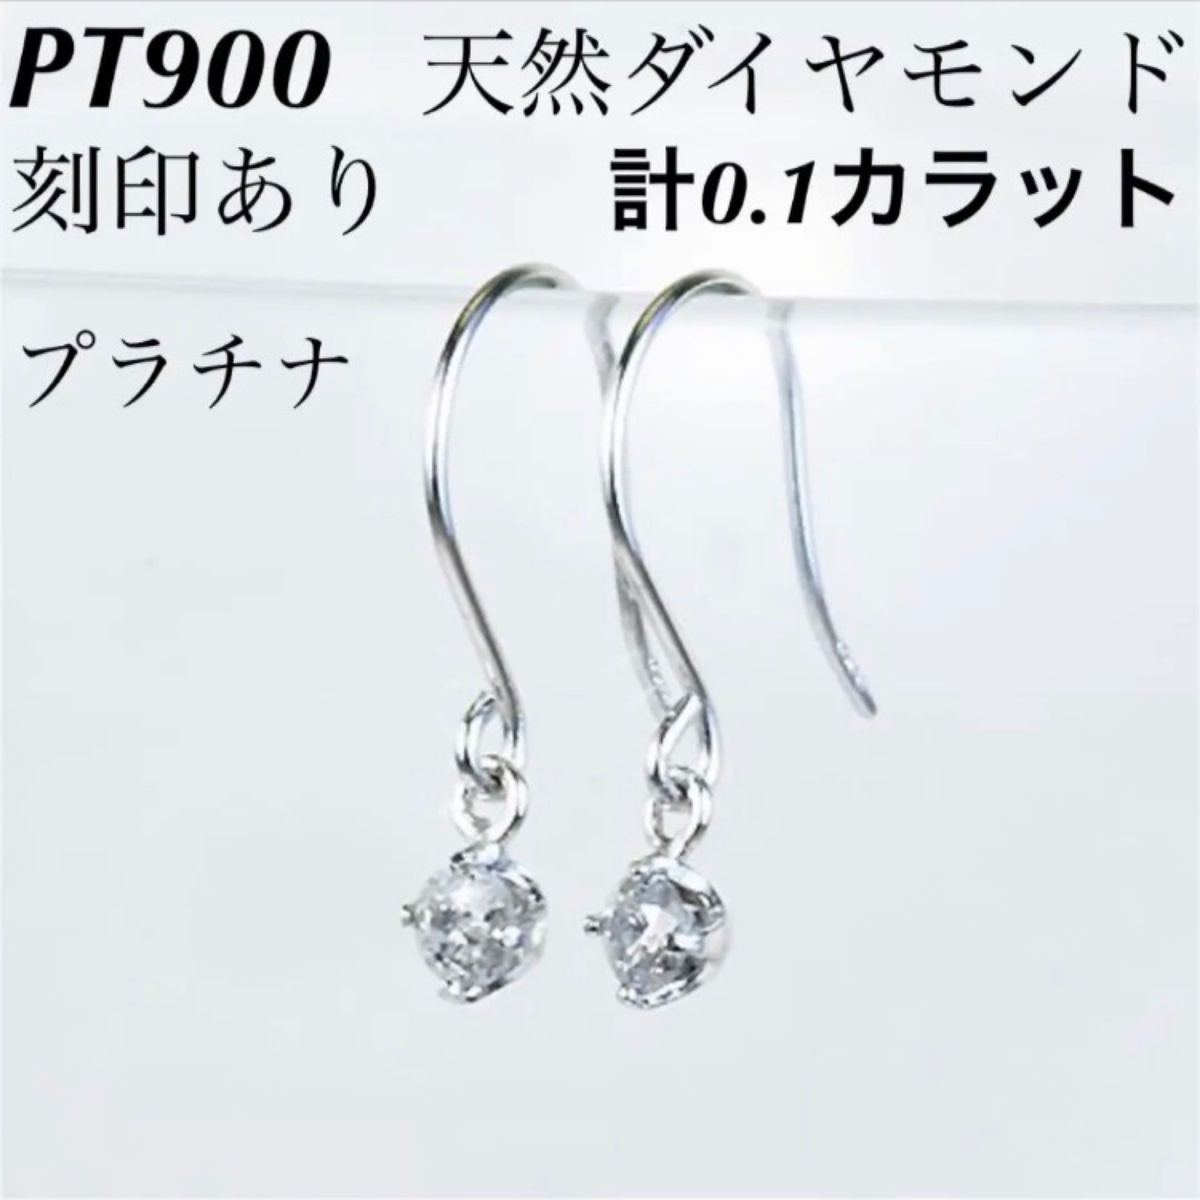 新品 PT900 天然ダイヤモンド プラチナピアス 刻印あり上質 日本製 ペア